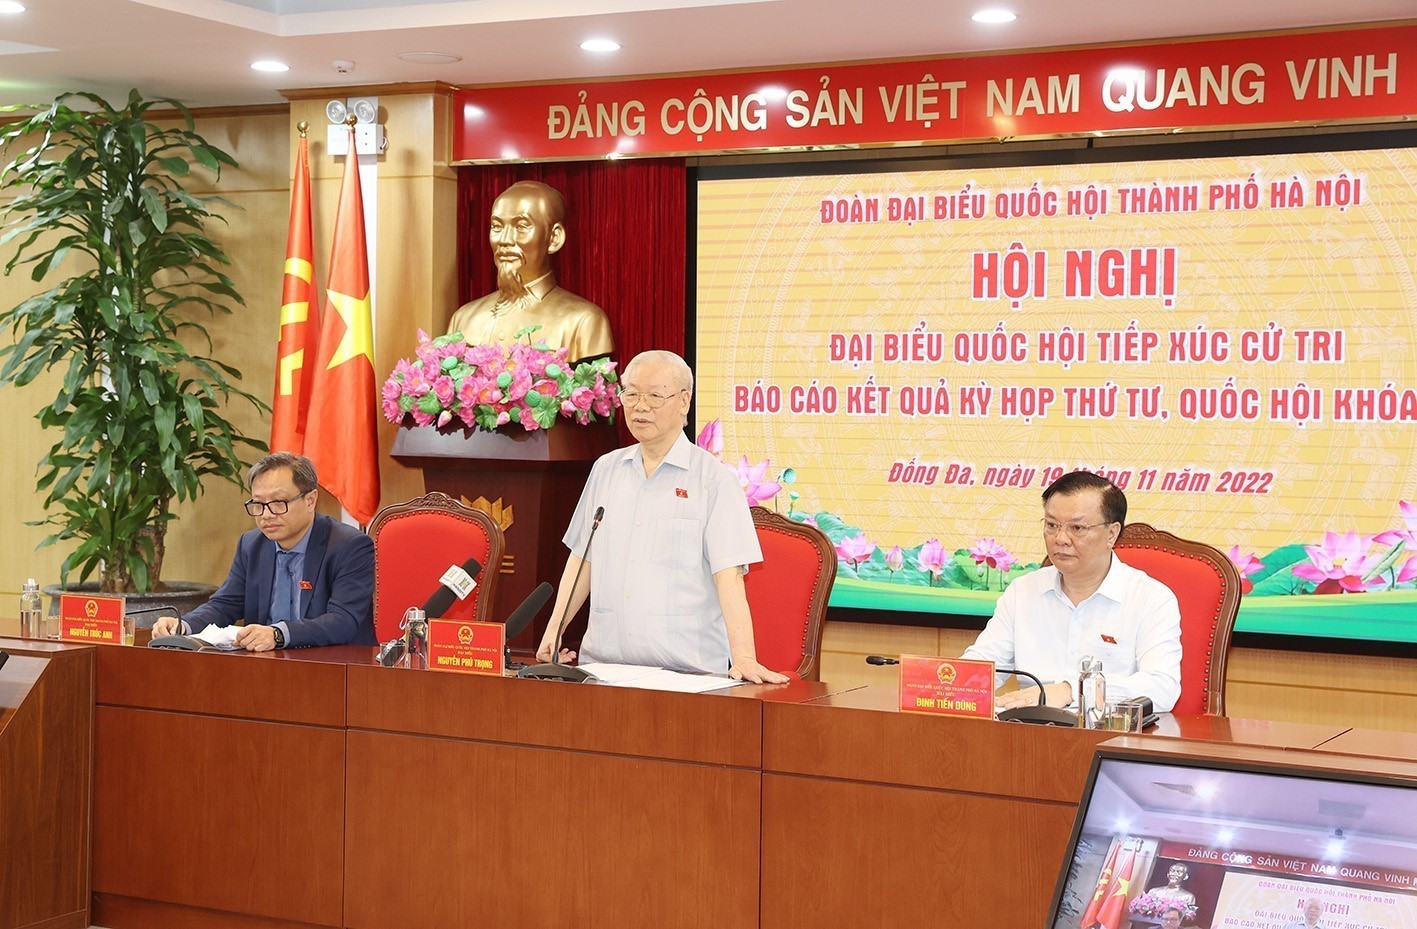 Tổng Bí thư Nguyễn Phú Trọng phát biểu tại buổi tiếp xúc cử tri ở quận Đống Đa. Ảnh: TTXVN